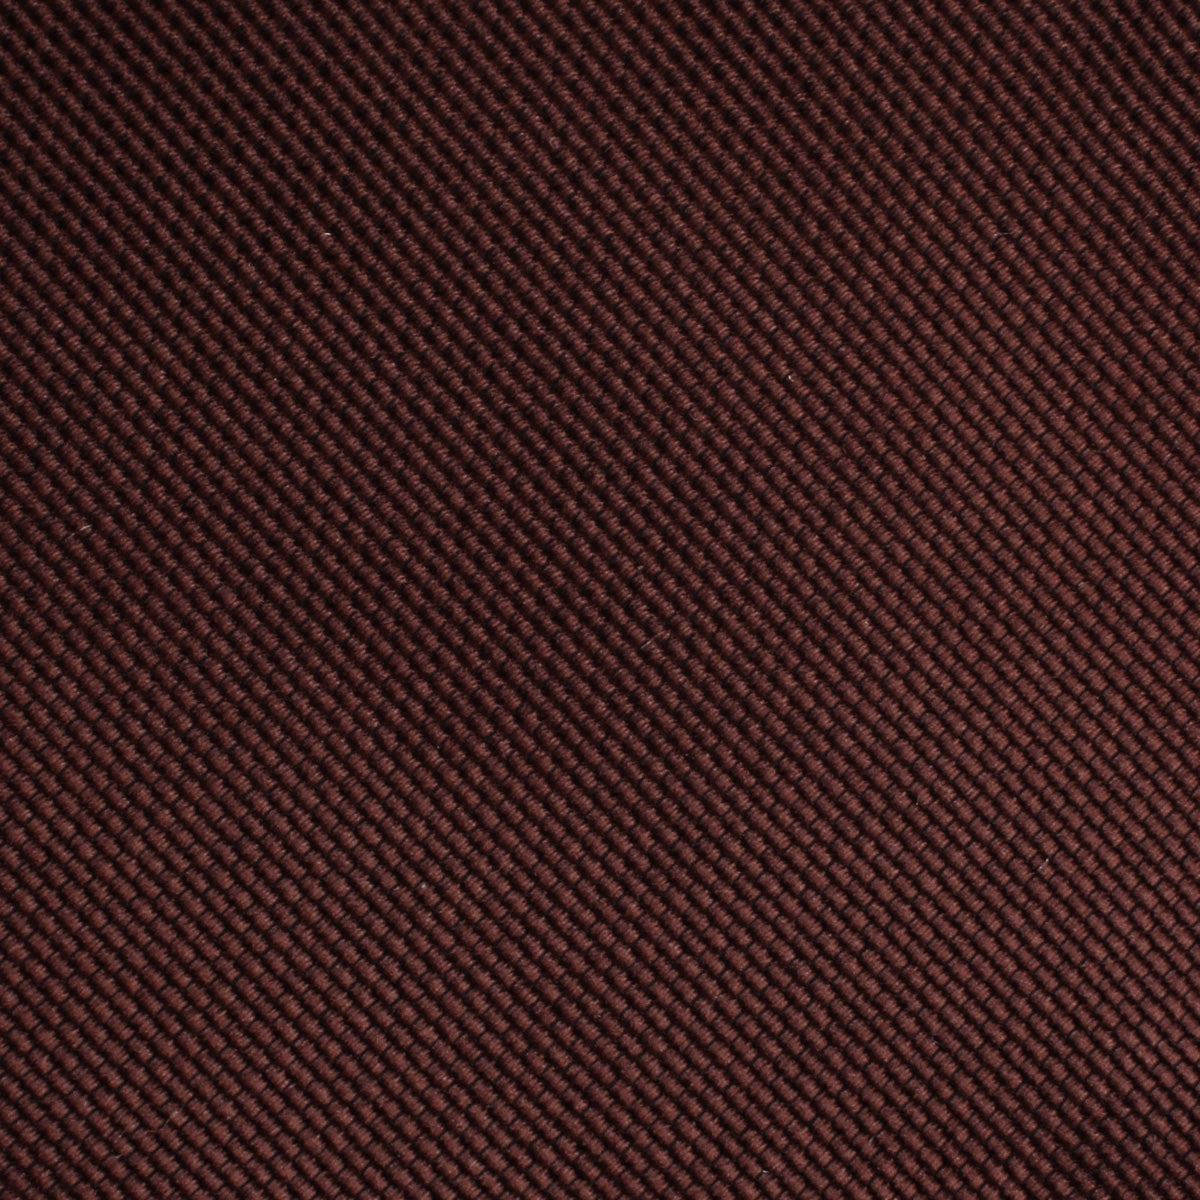 Dark Brown Weave Skinny Tie Fabric